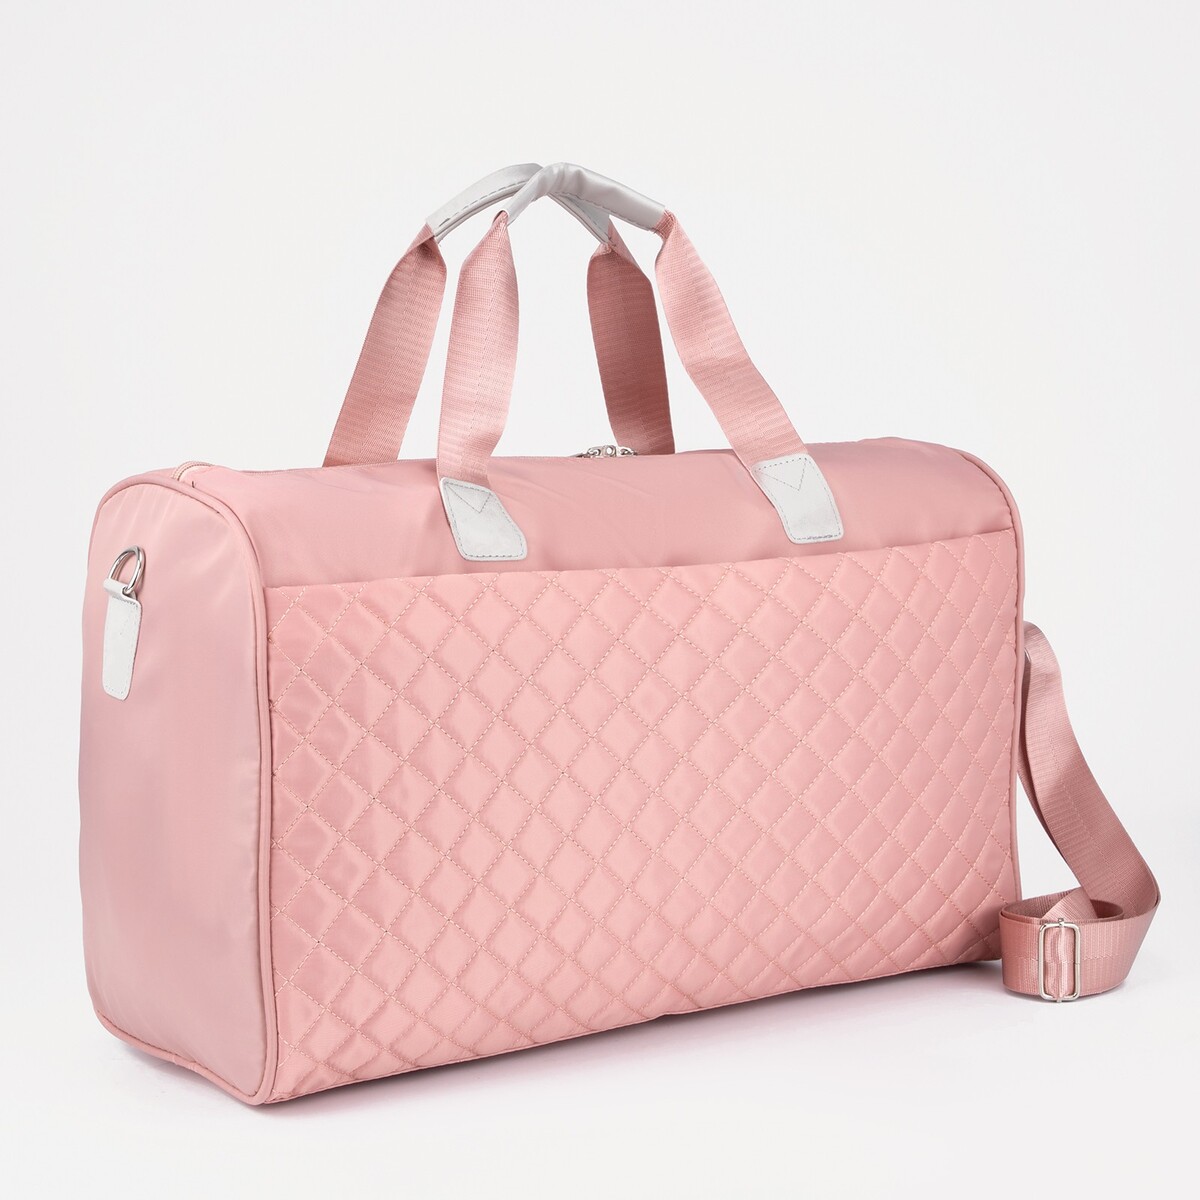 Сумка дорожная на молнии, наружный карман, длинный ремень, держатель для чемодана, цвет розовый держатель для фена 9×9×10 см розовый